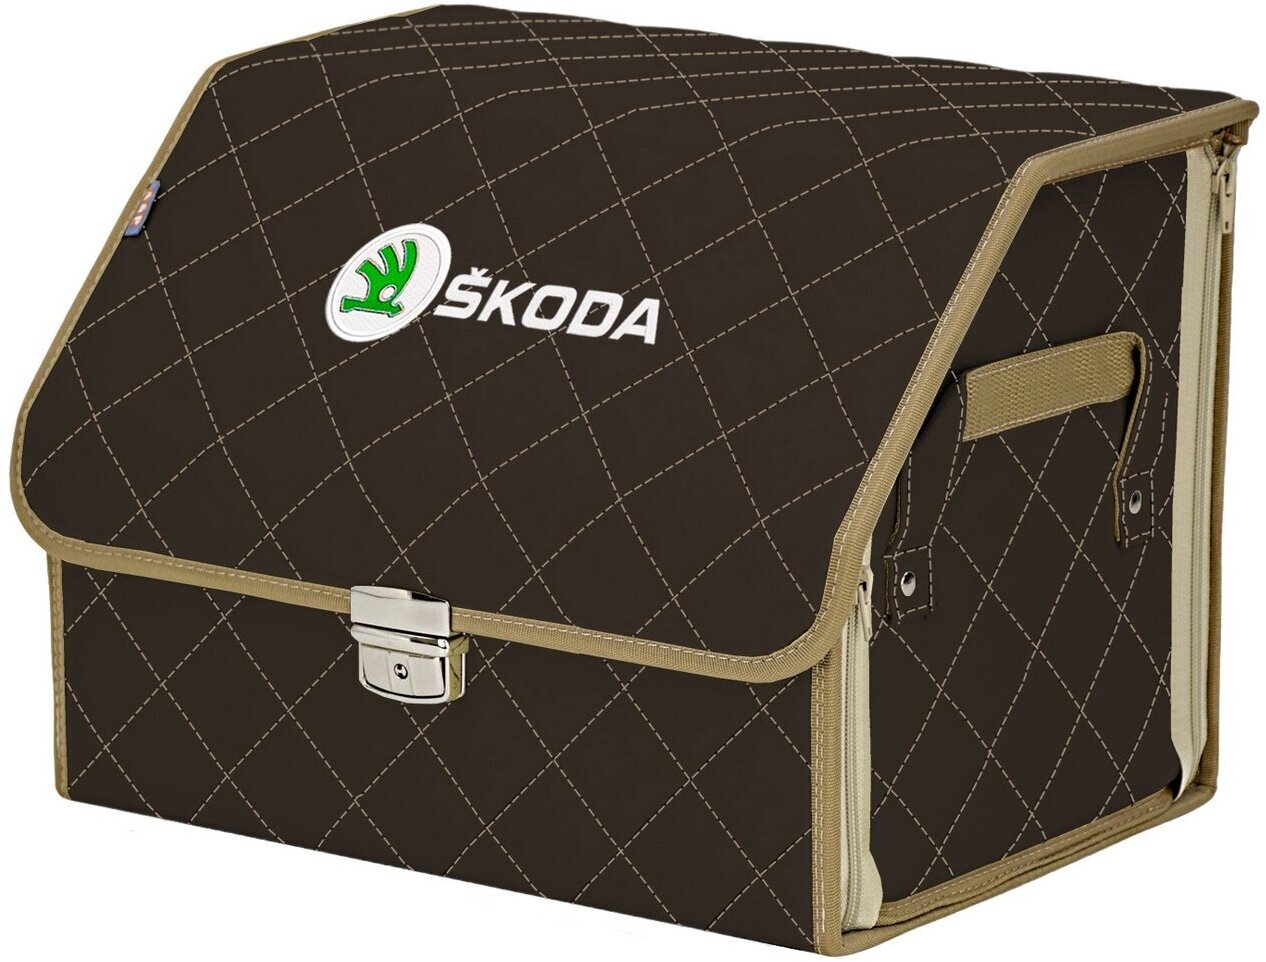 Органайзер-саквояж в багажник "Союз Премиум" (размер M). Цвет: коричневый с бежевой прострочкой Ромб и вышивкой Skoda (Шкода).